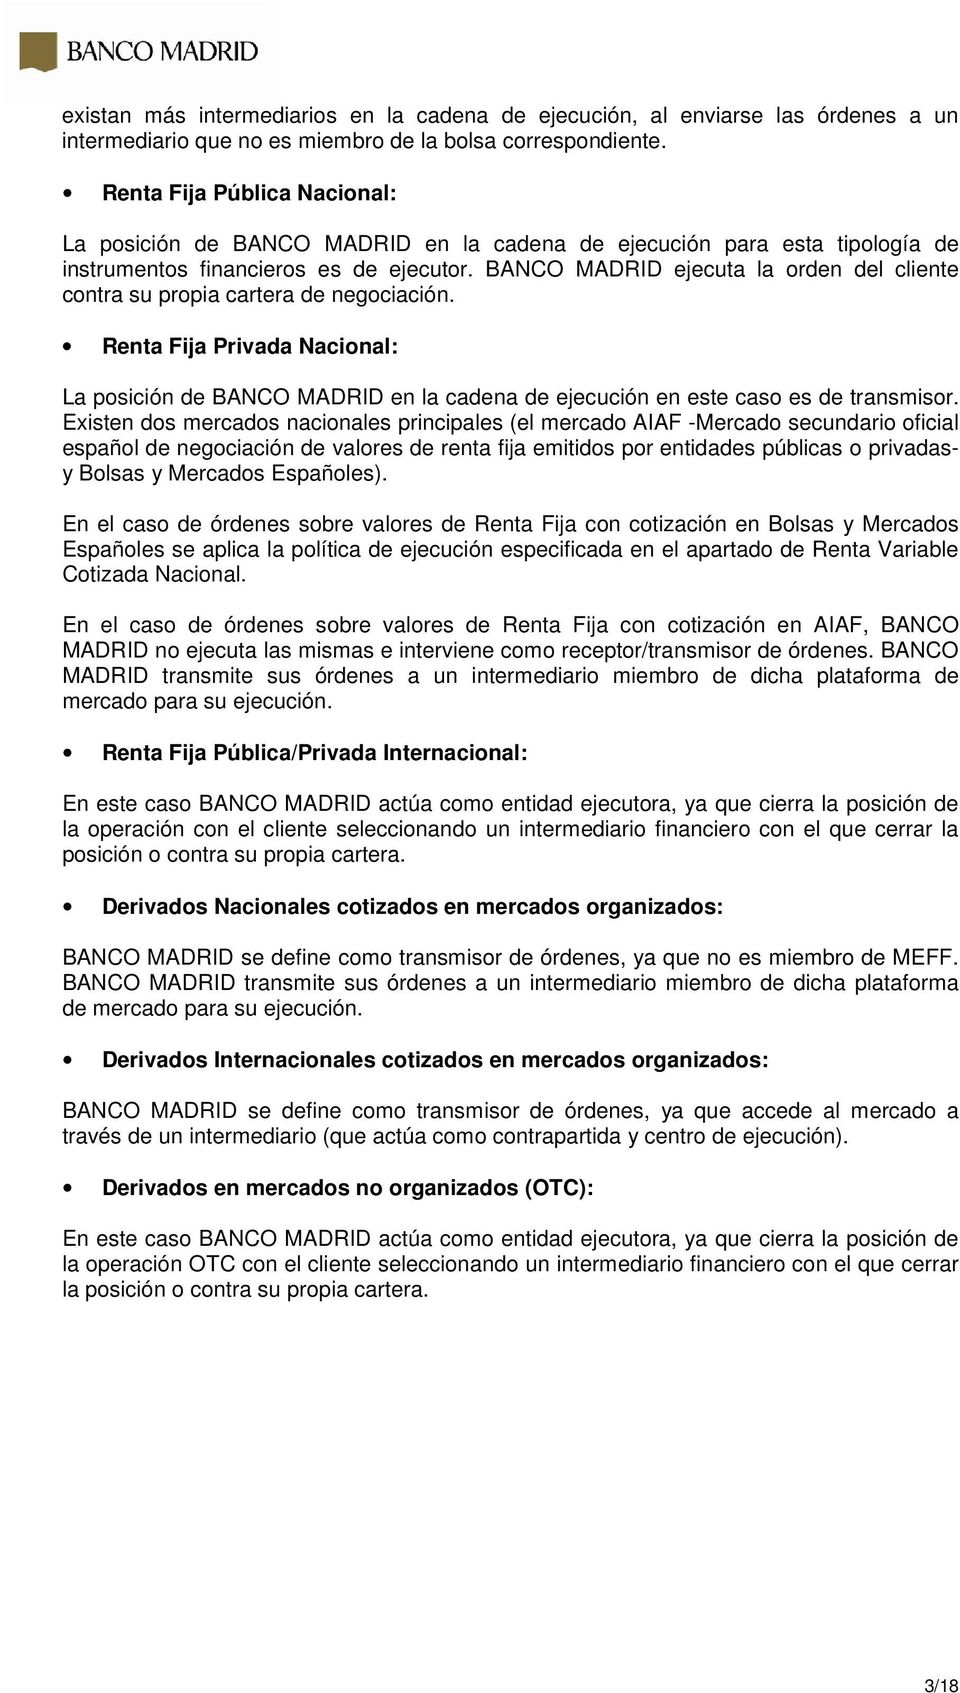 BANCO MADRID ejecuta la orden del cliente contra su propia cartera de negociación. Renta Fija Privada Nacional: La posición de BANCO MADRID en la cadena de ejecución en este caso es de transmisor.